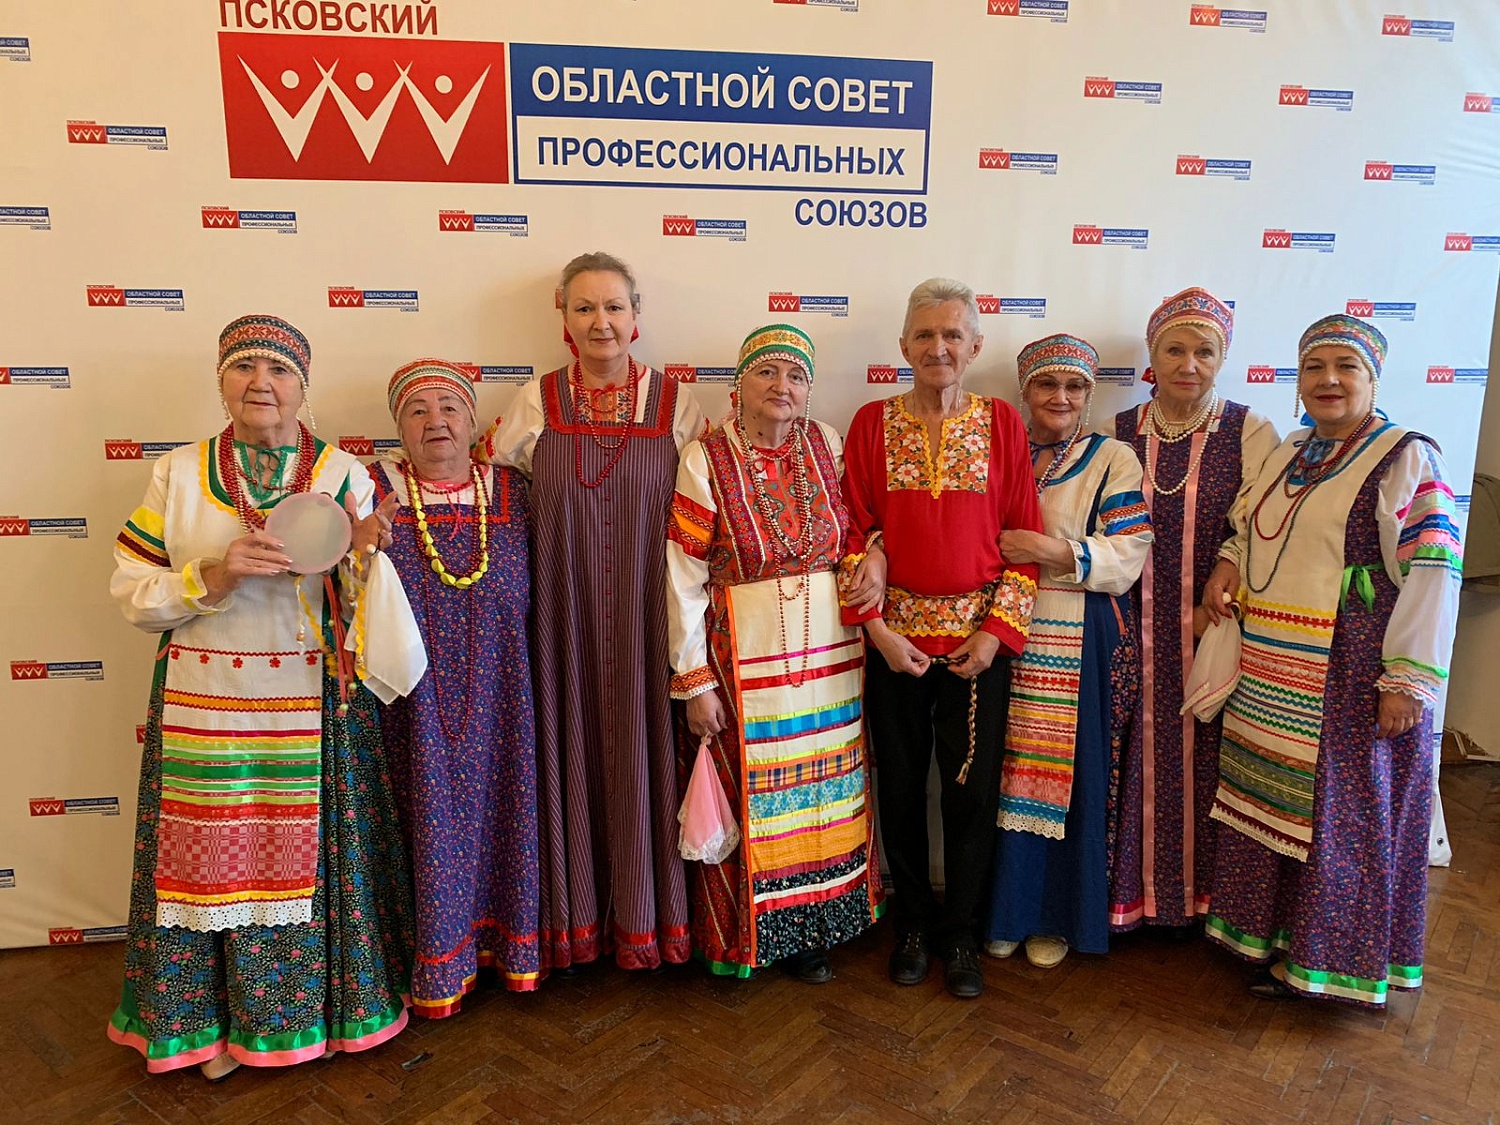 Праздник «серебряного возраста» прошёл в Псковском облсовпрофе